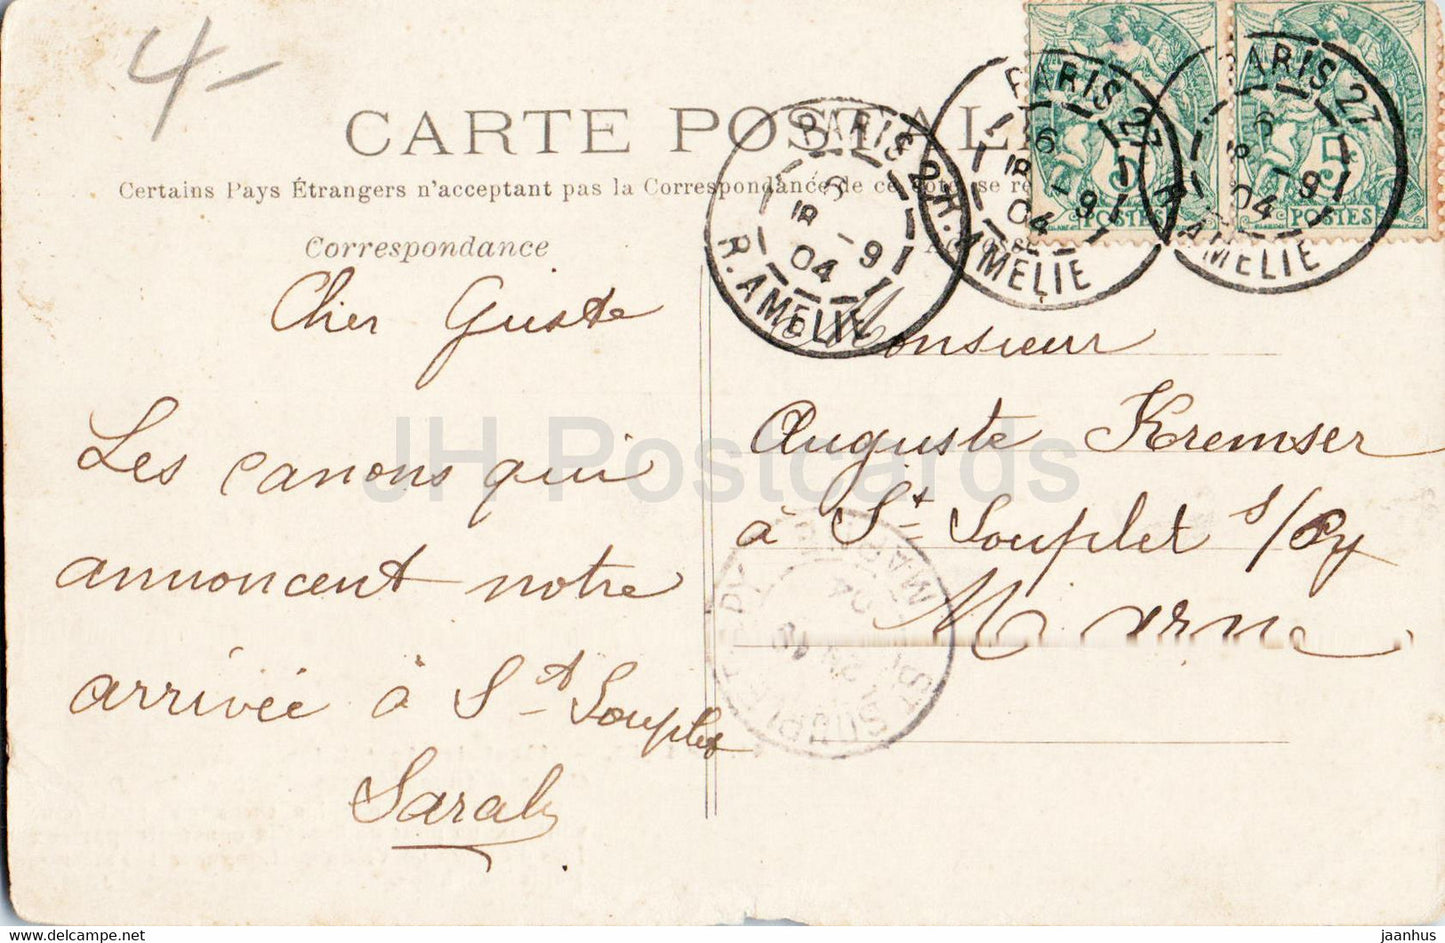 Paris - Hôtel des Invalides - canon - militaire - 41 - carte postale ancienne - 1904 - France - utilisé